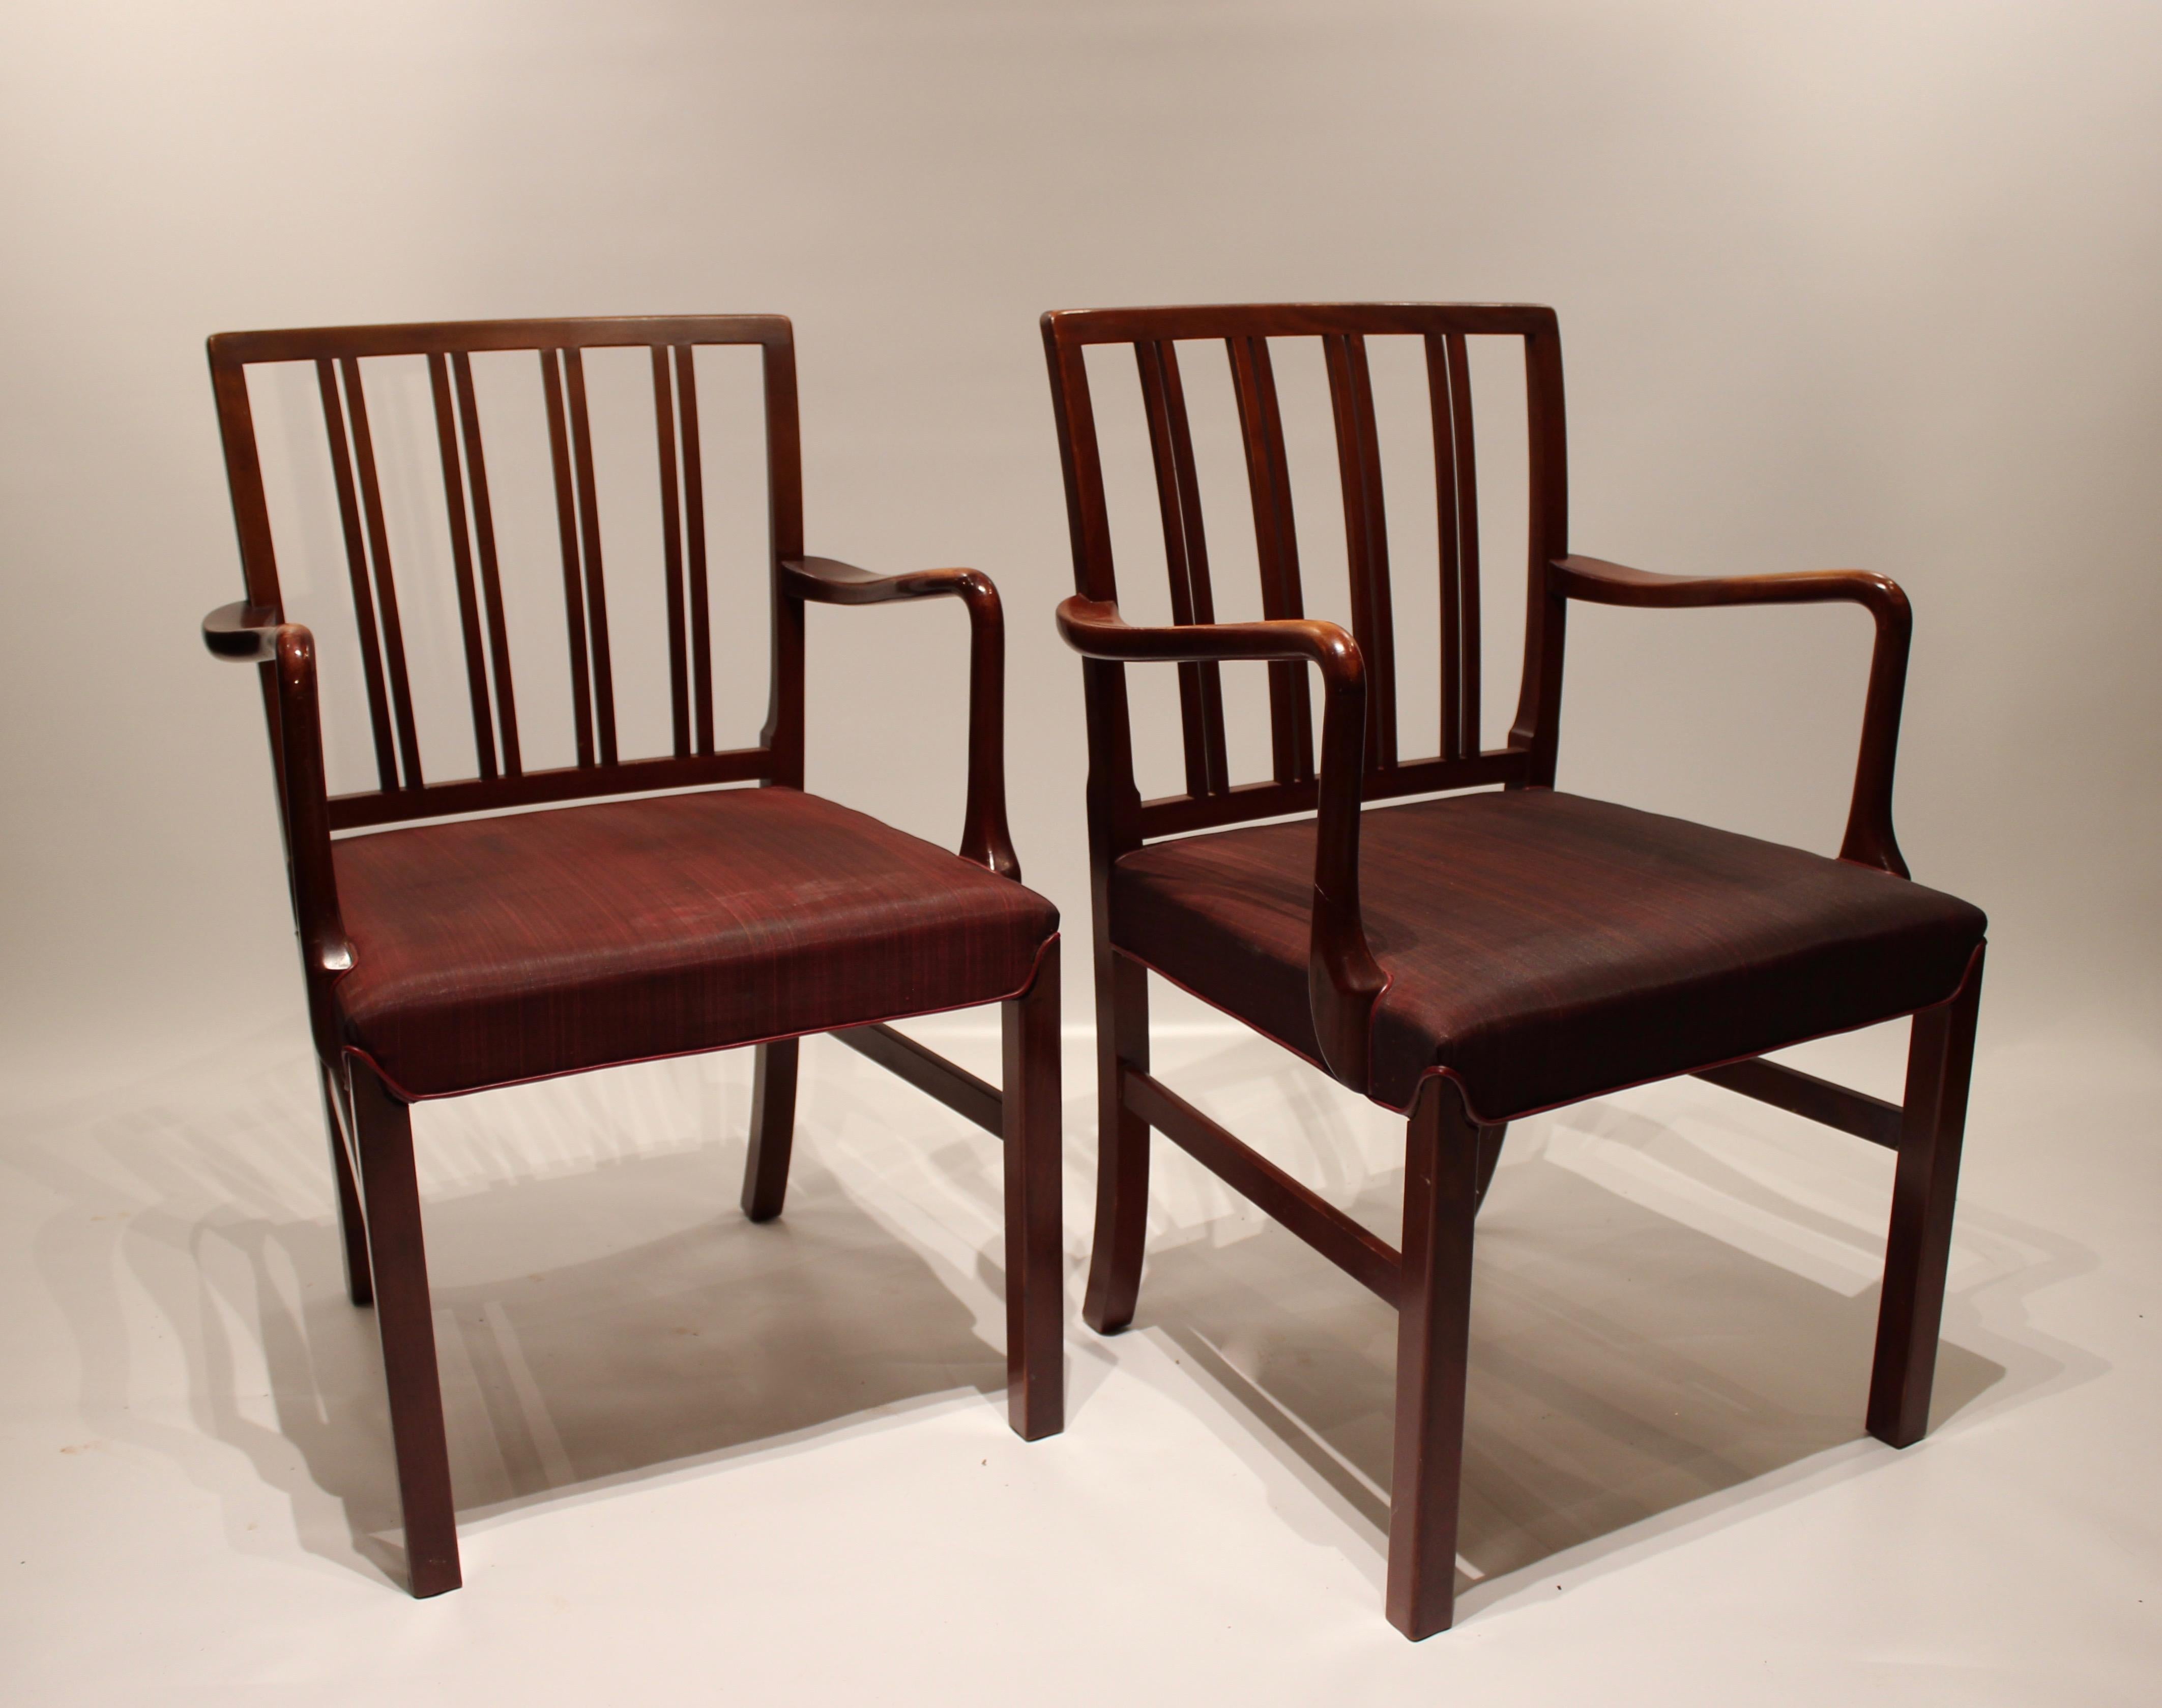 Ces fauteuils dégagent une élégance et une sophistication intemporelles, avec leur construction en bois d'acajou et leur revêtement en tissu rouge. Ils ont été conçus par l'emblématique designer de meubles danois Fritz Hansen dans les années 1930 et